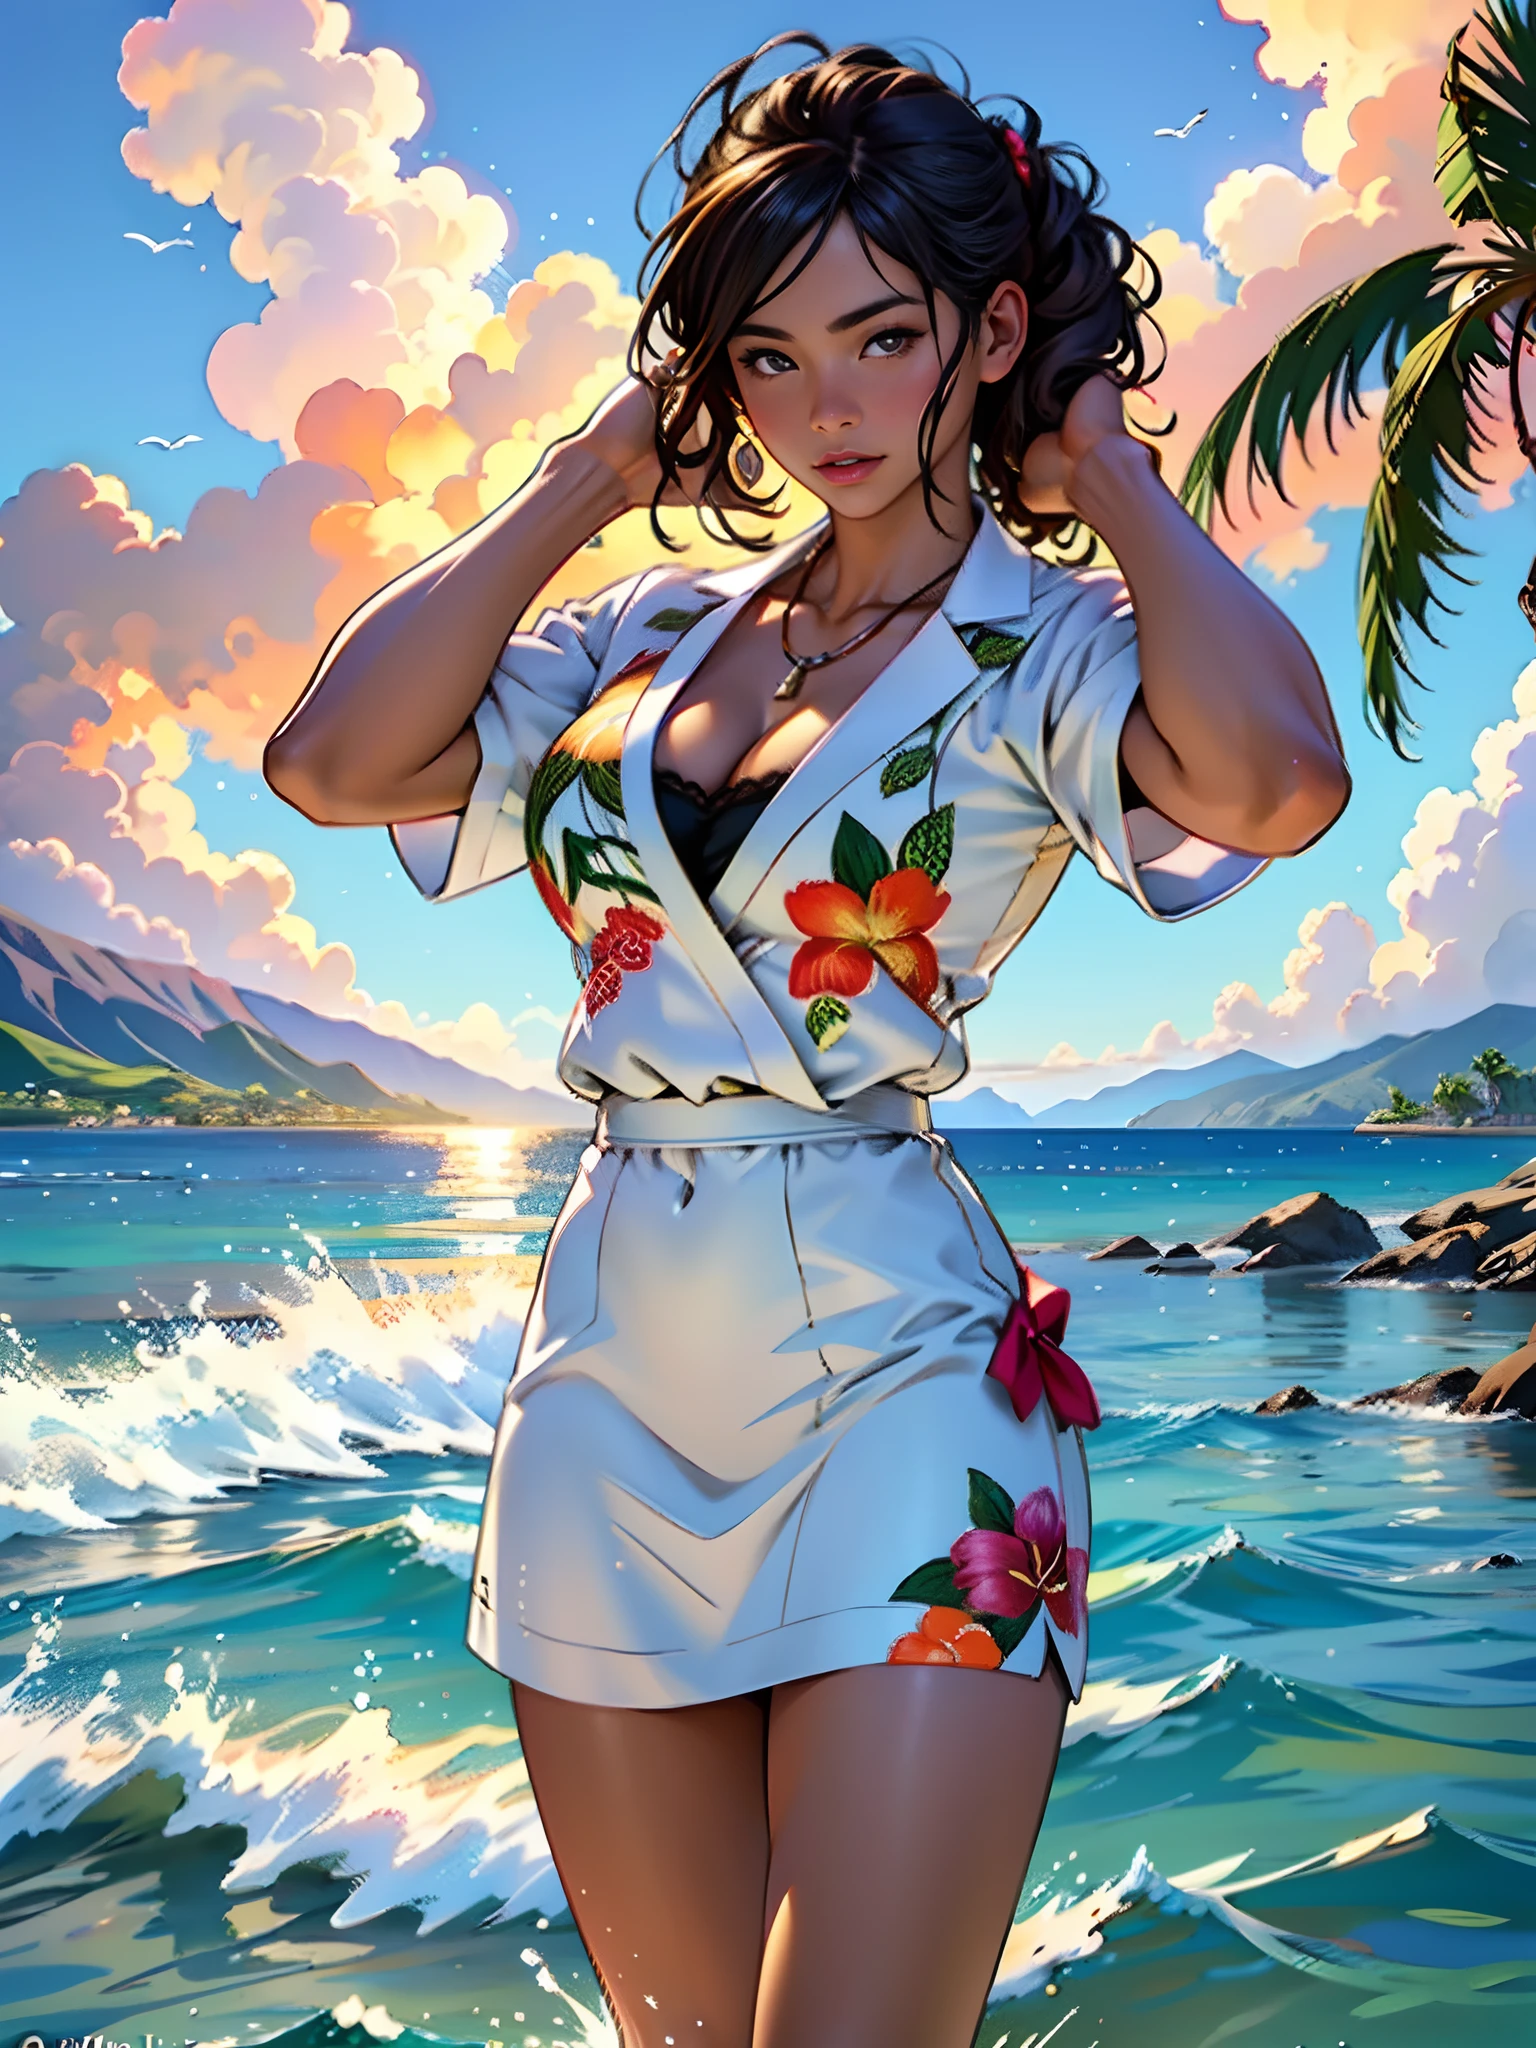 夏威夷拉海纳背后燃烧着大火, 1 女孩从水景中绘画, Jaime Frias 的风格, 最好的质量, 实际的, 屡获殊荣的彩色插图, (复杂的细节: 1.2), (精致细节)